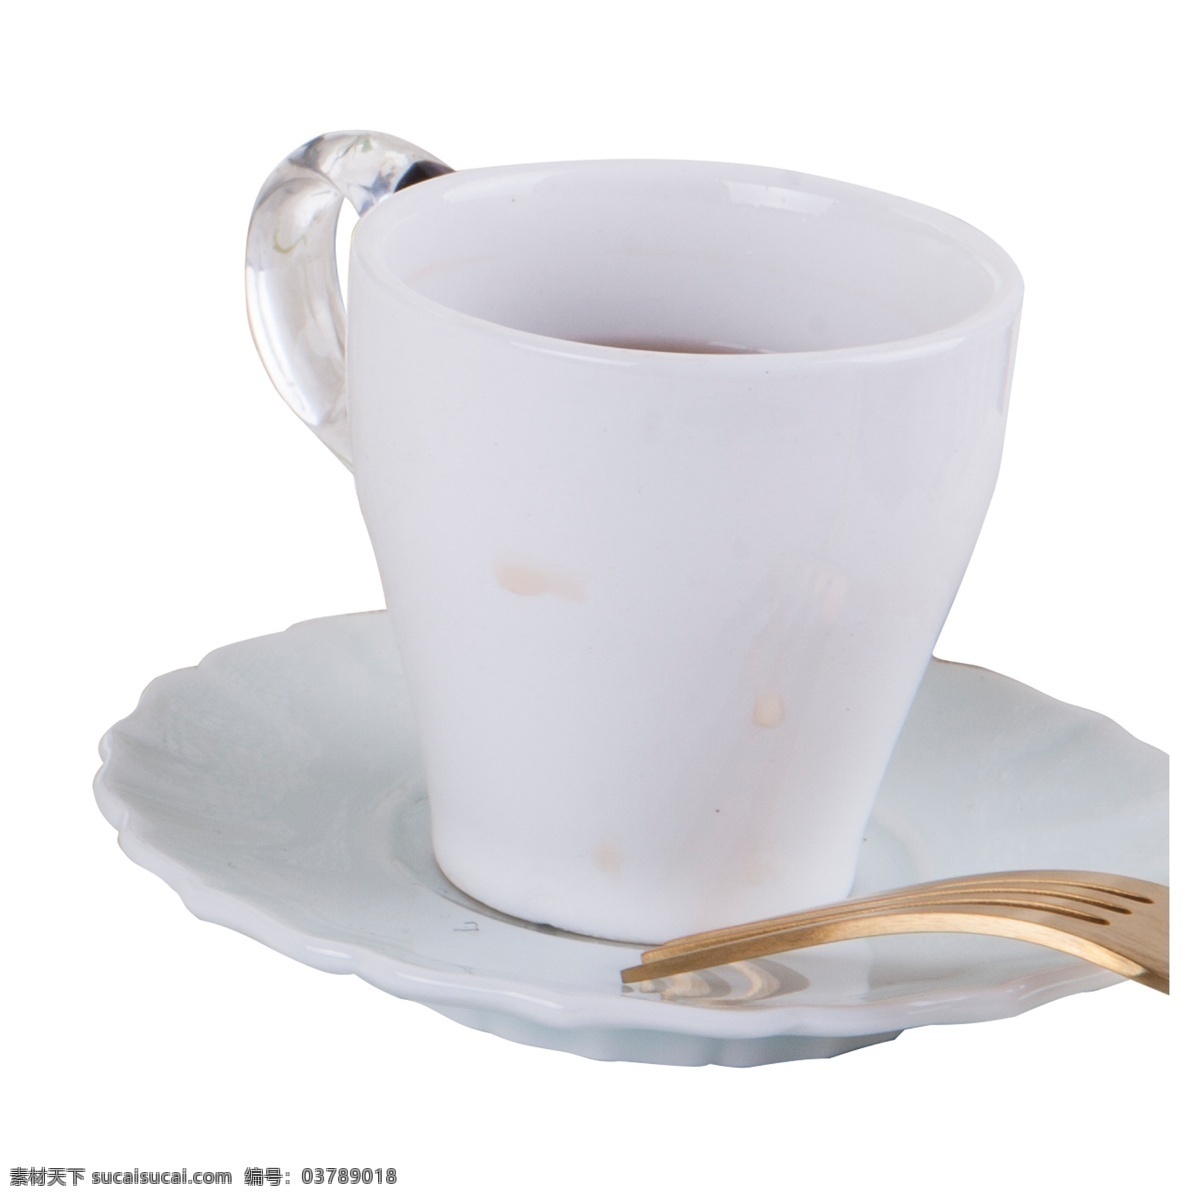 实拍 餐具 水杯 叉子 一个 杯子 茶杯 白色水杯 白色餐具水杯 餐桌餐具 实拍白色水杯 铁叉